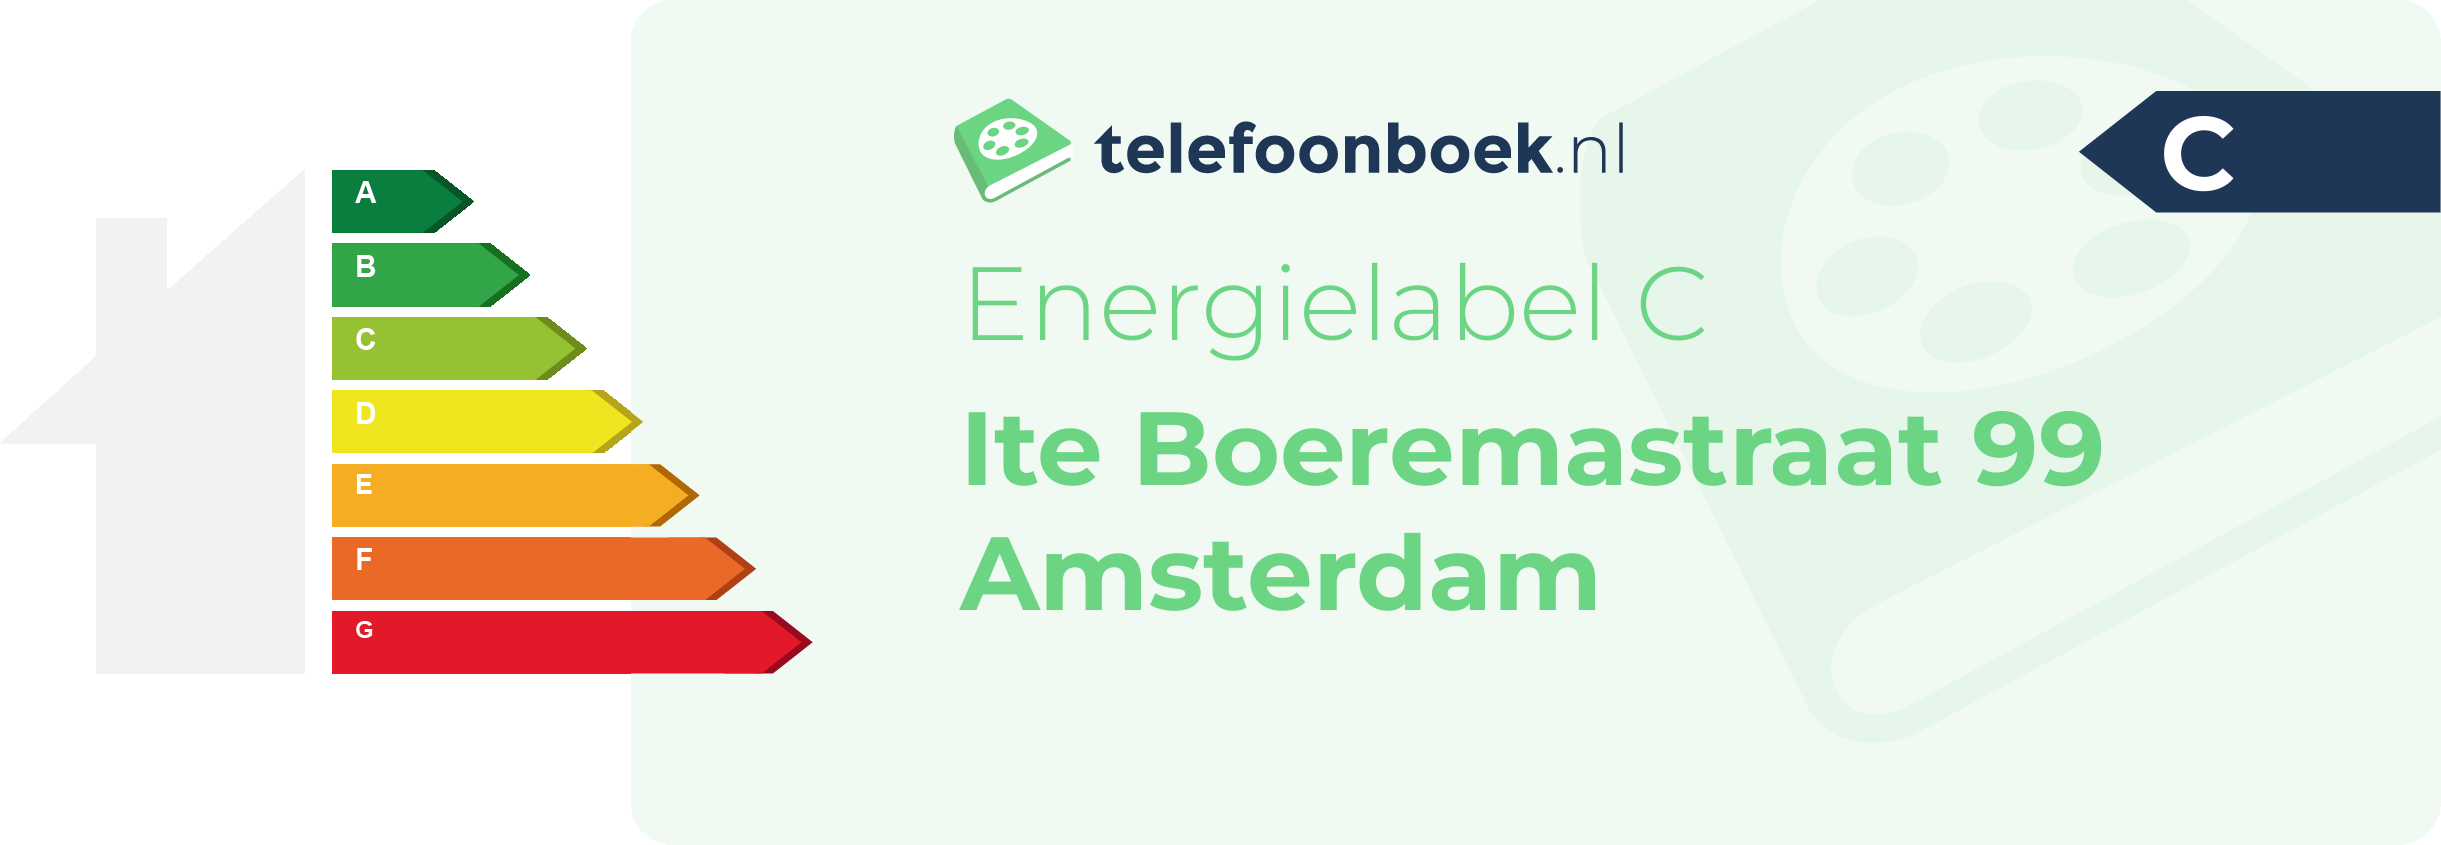 Energielabel Ite Boeremastraat 99 Amsterdam